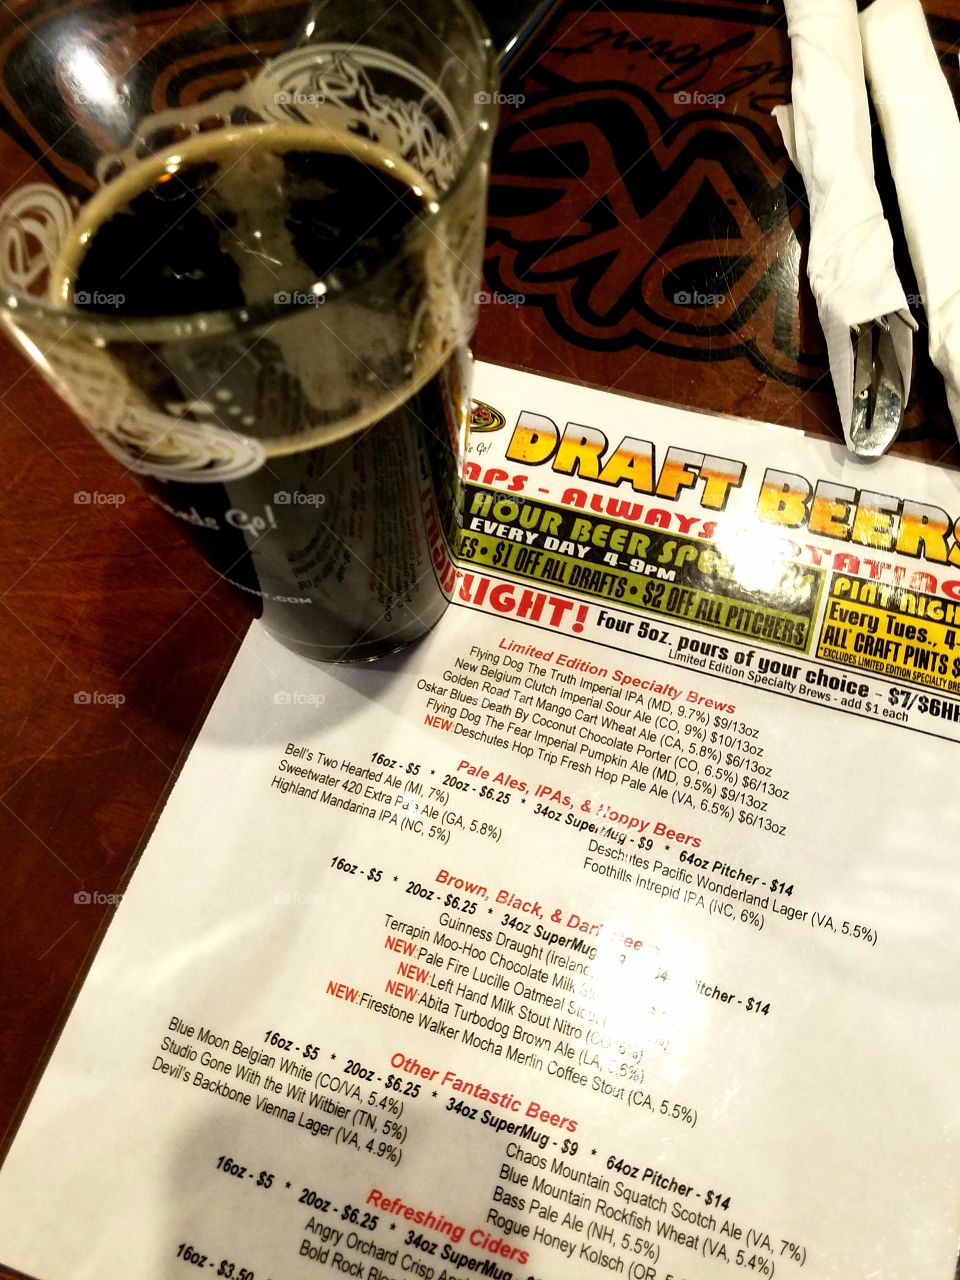 The beer menu